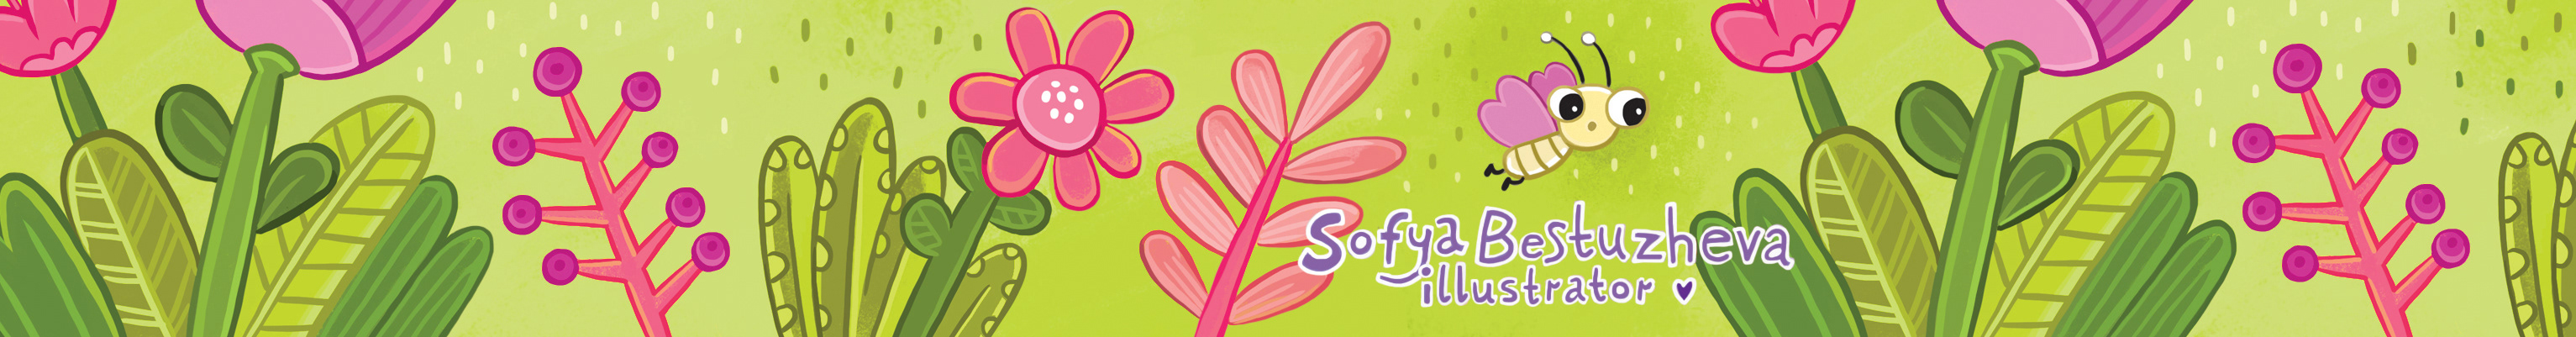 Profil-Banner von Sofya Bestuzheva